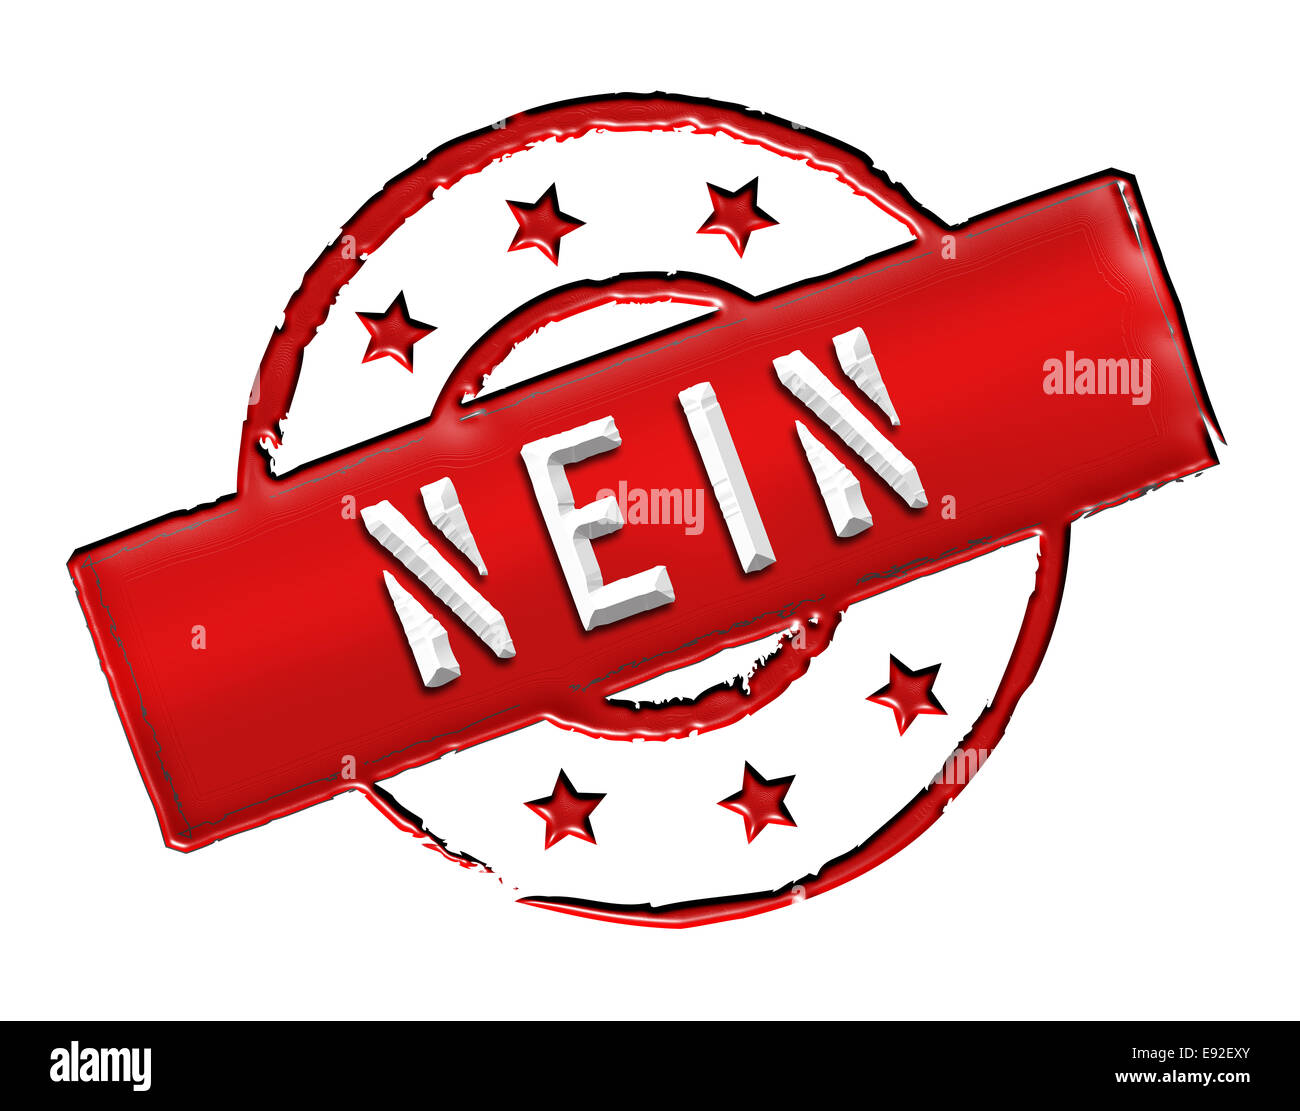 Stamp - NEIN Stock Photo - Alamy